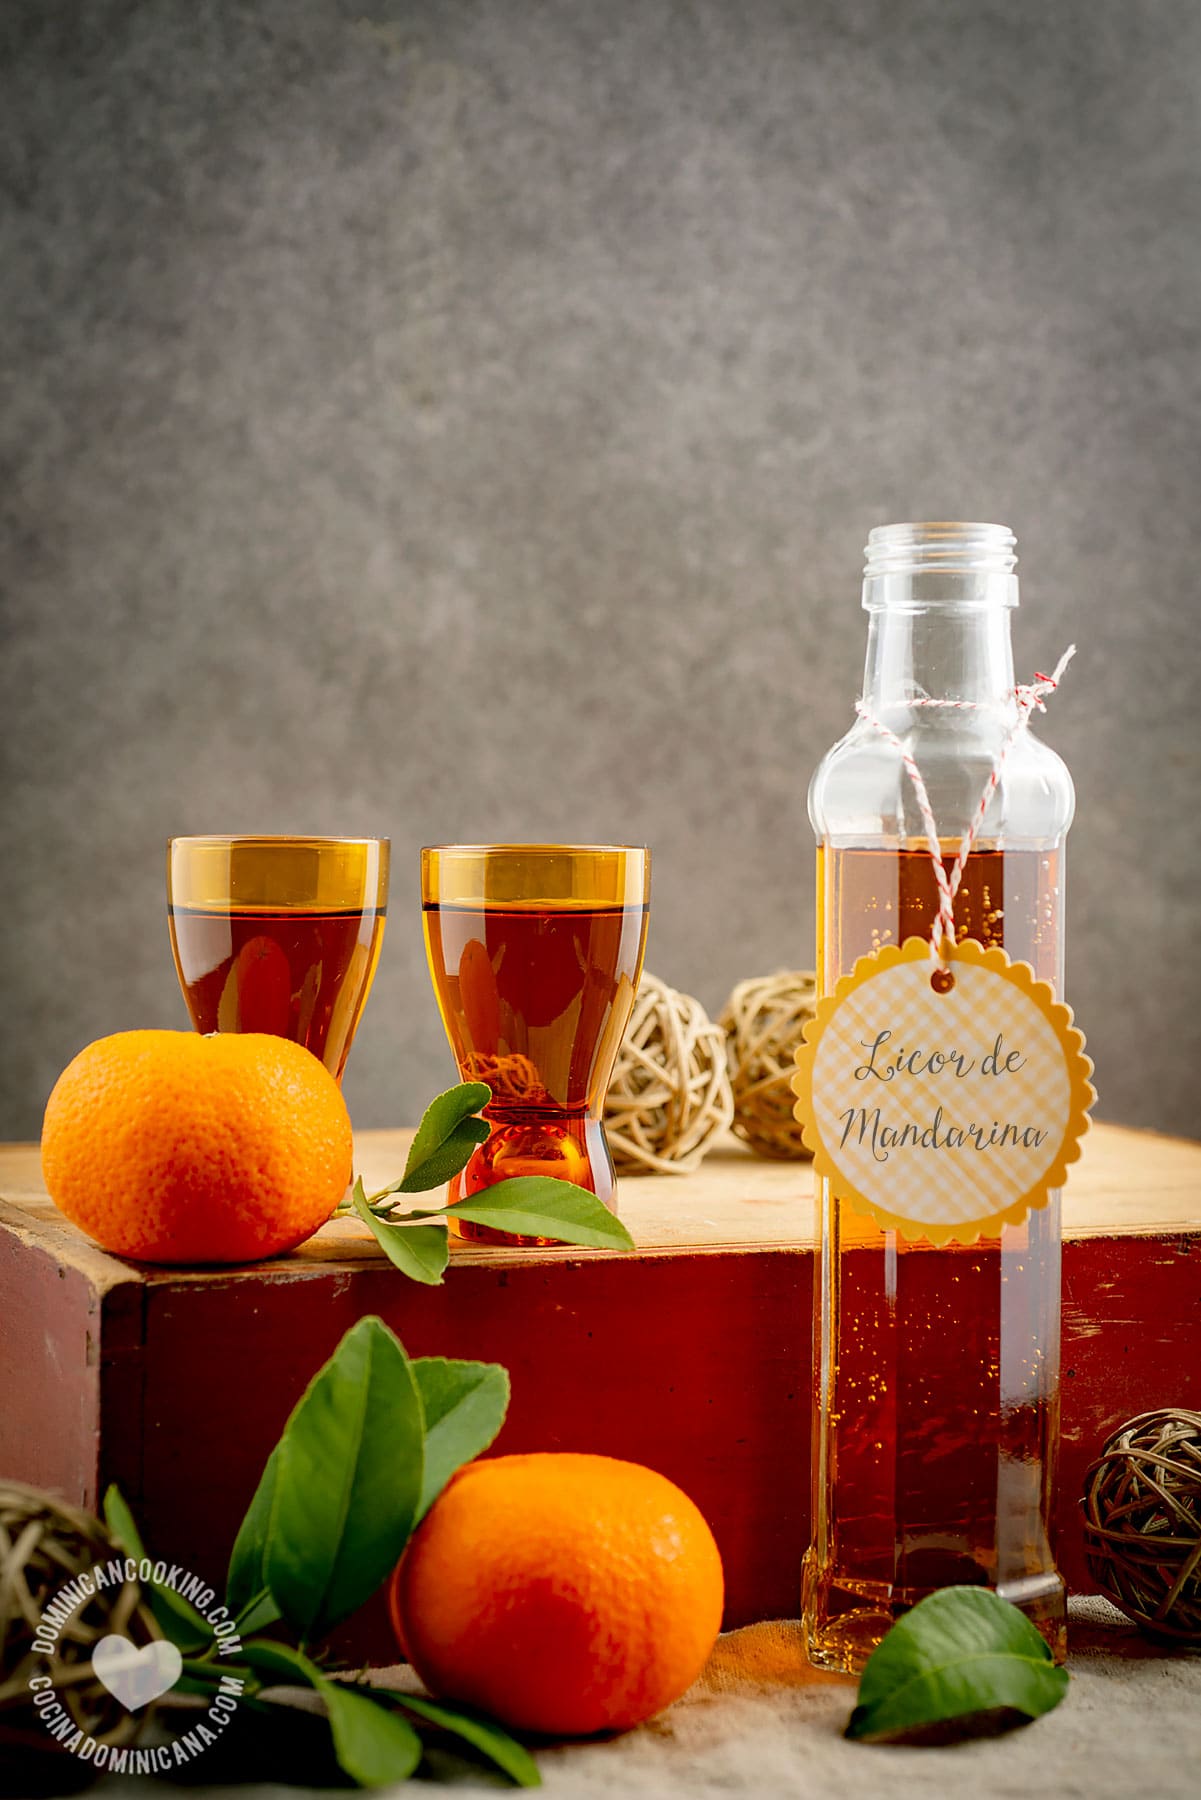 Mandarin Orange Liqueur